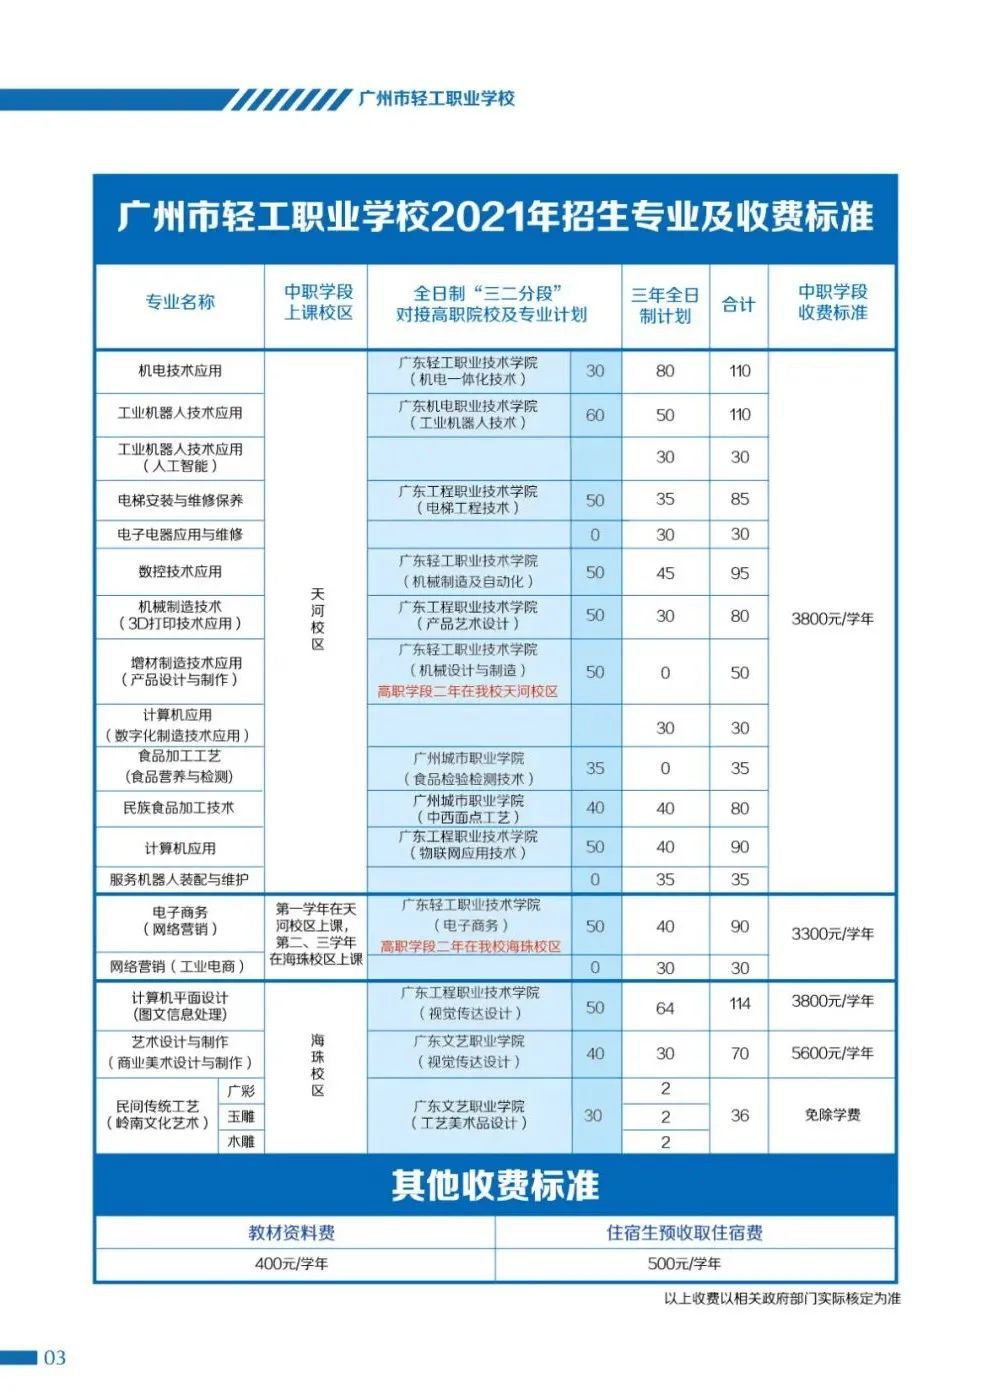 【中职招生】 广州市轻工职业学校2021年招生简章！